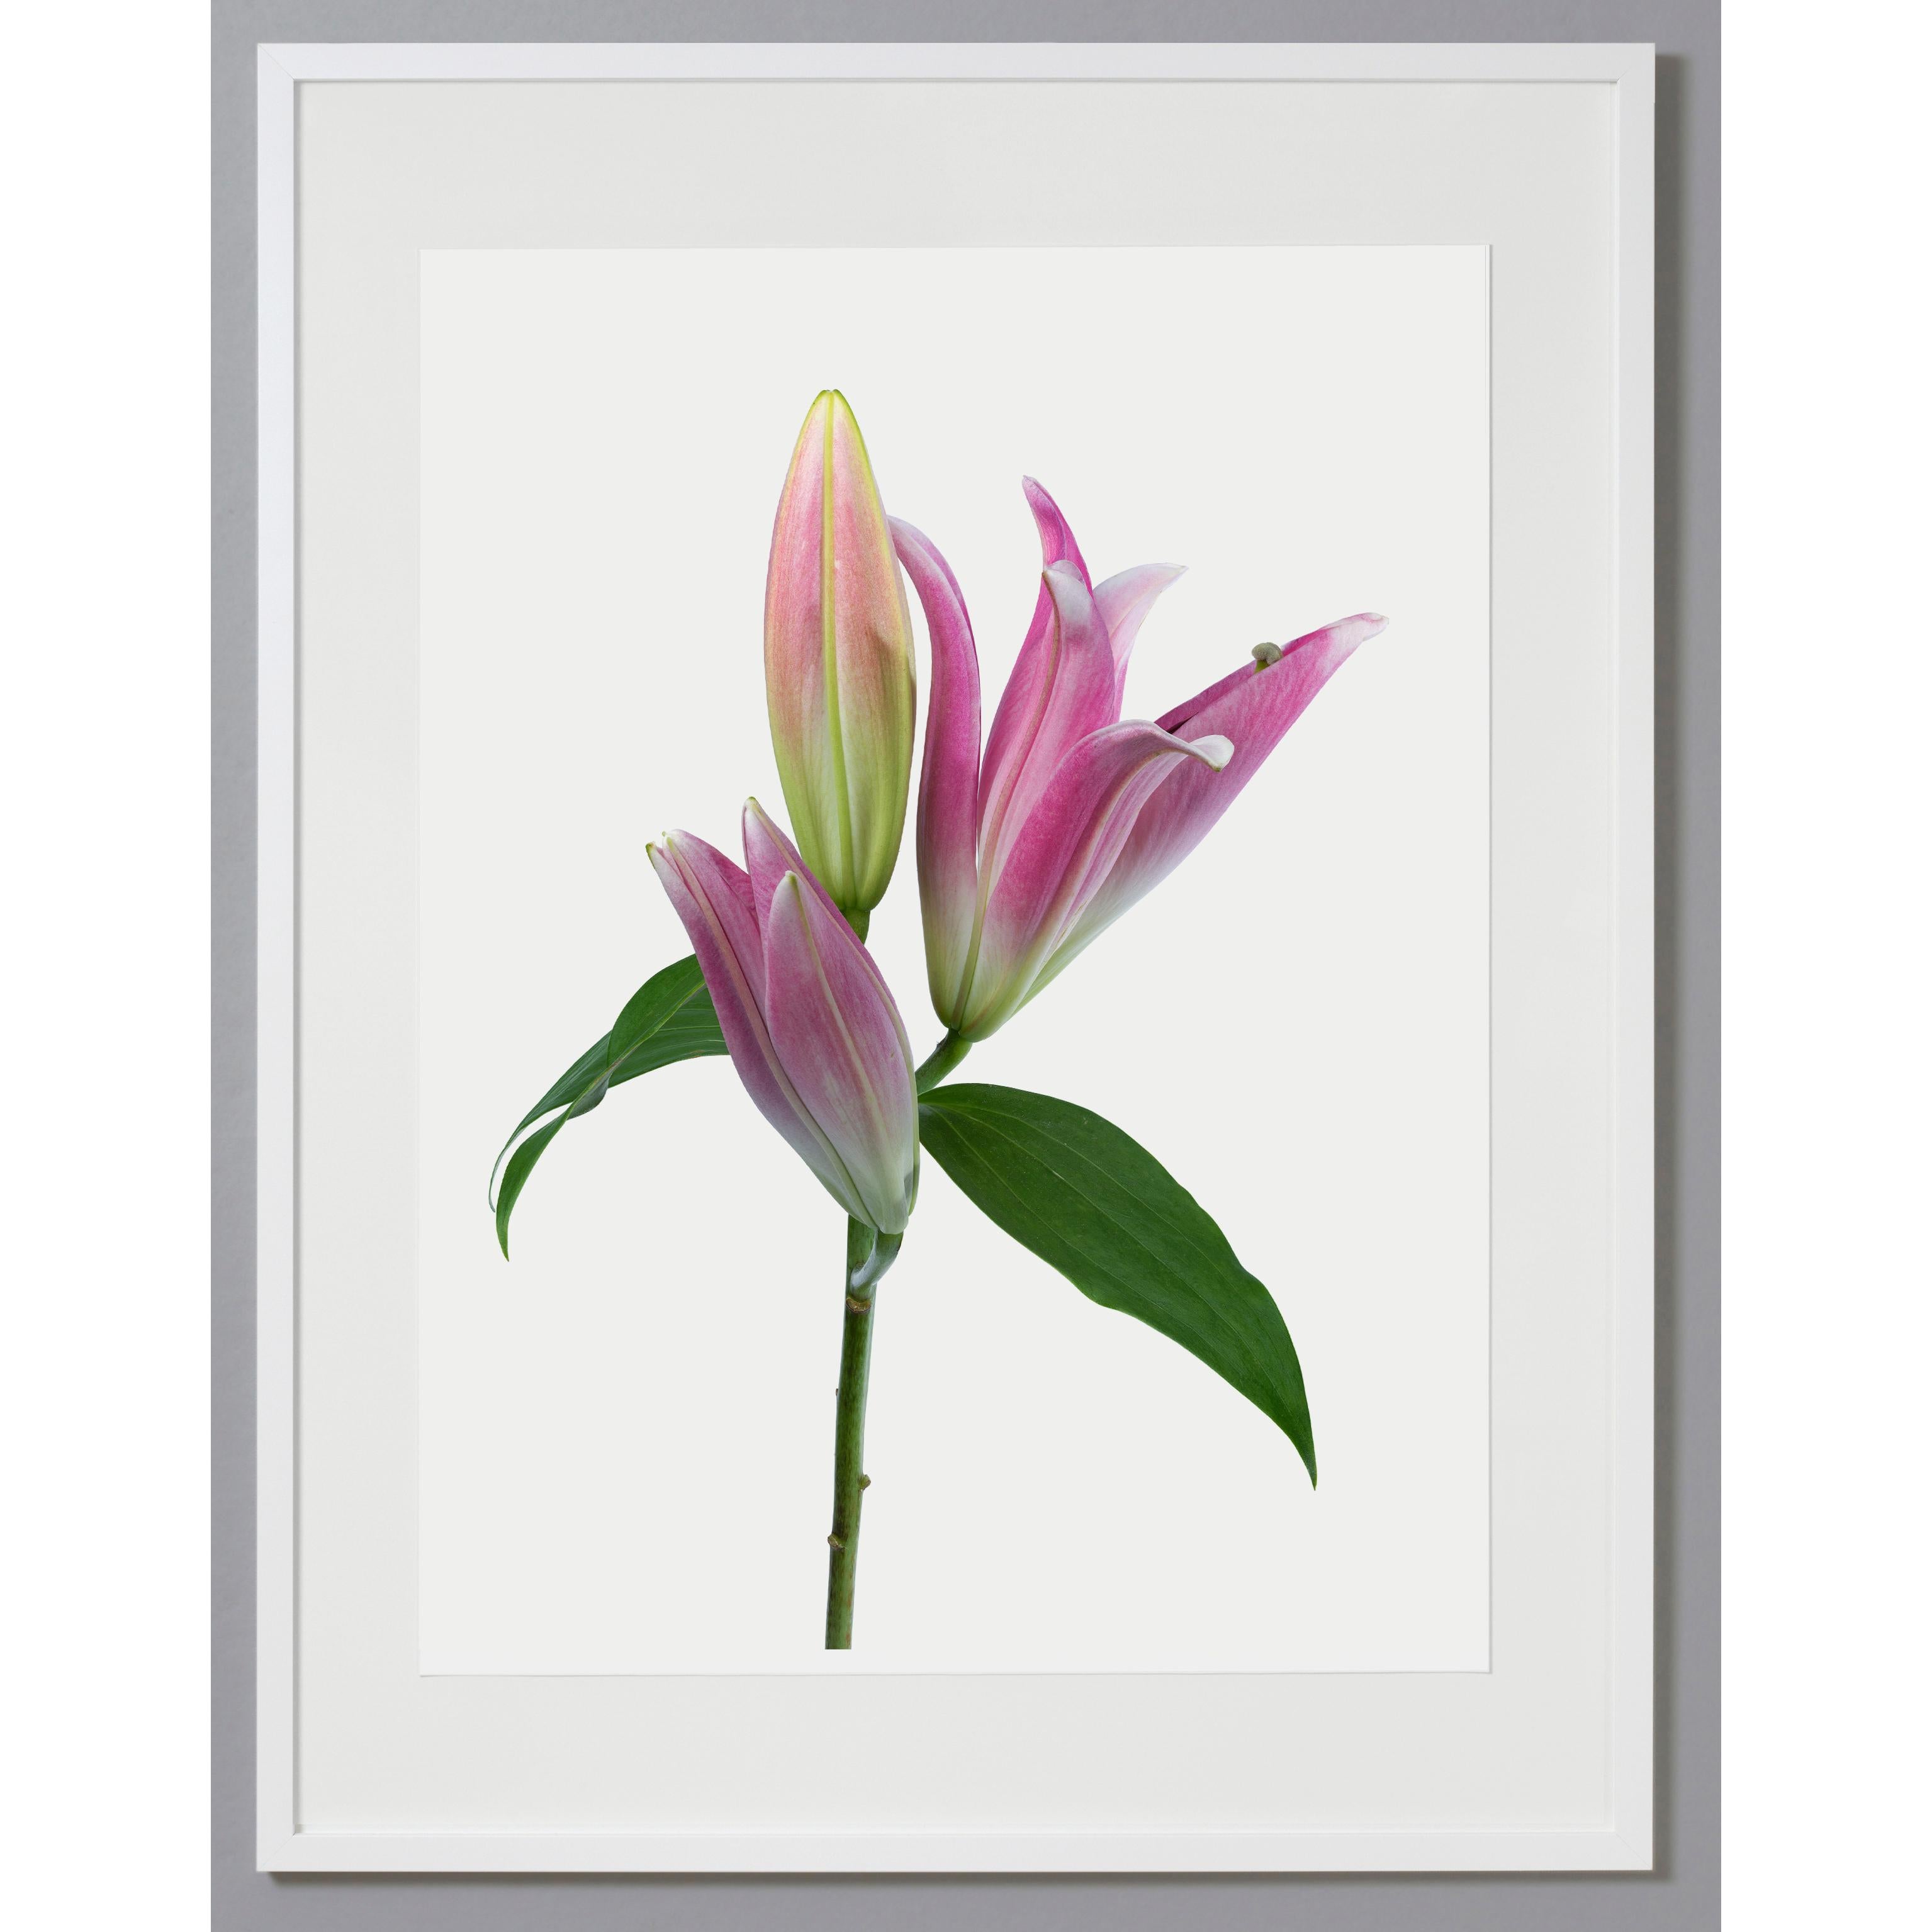 Color Photograph Tim Nighswander - Lily 181 B, Photographie couleur, édition limitée, rose, encadrée, botanique, florale